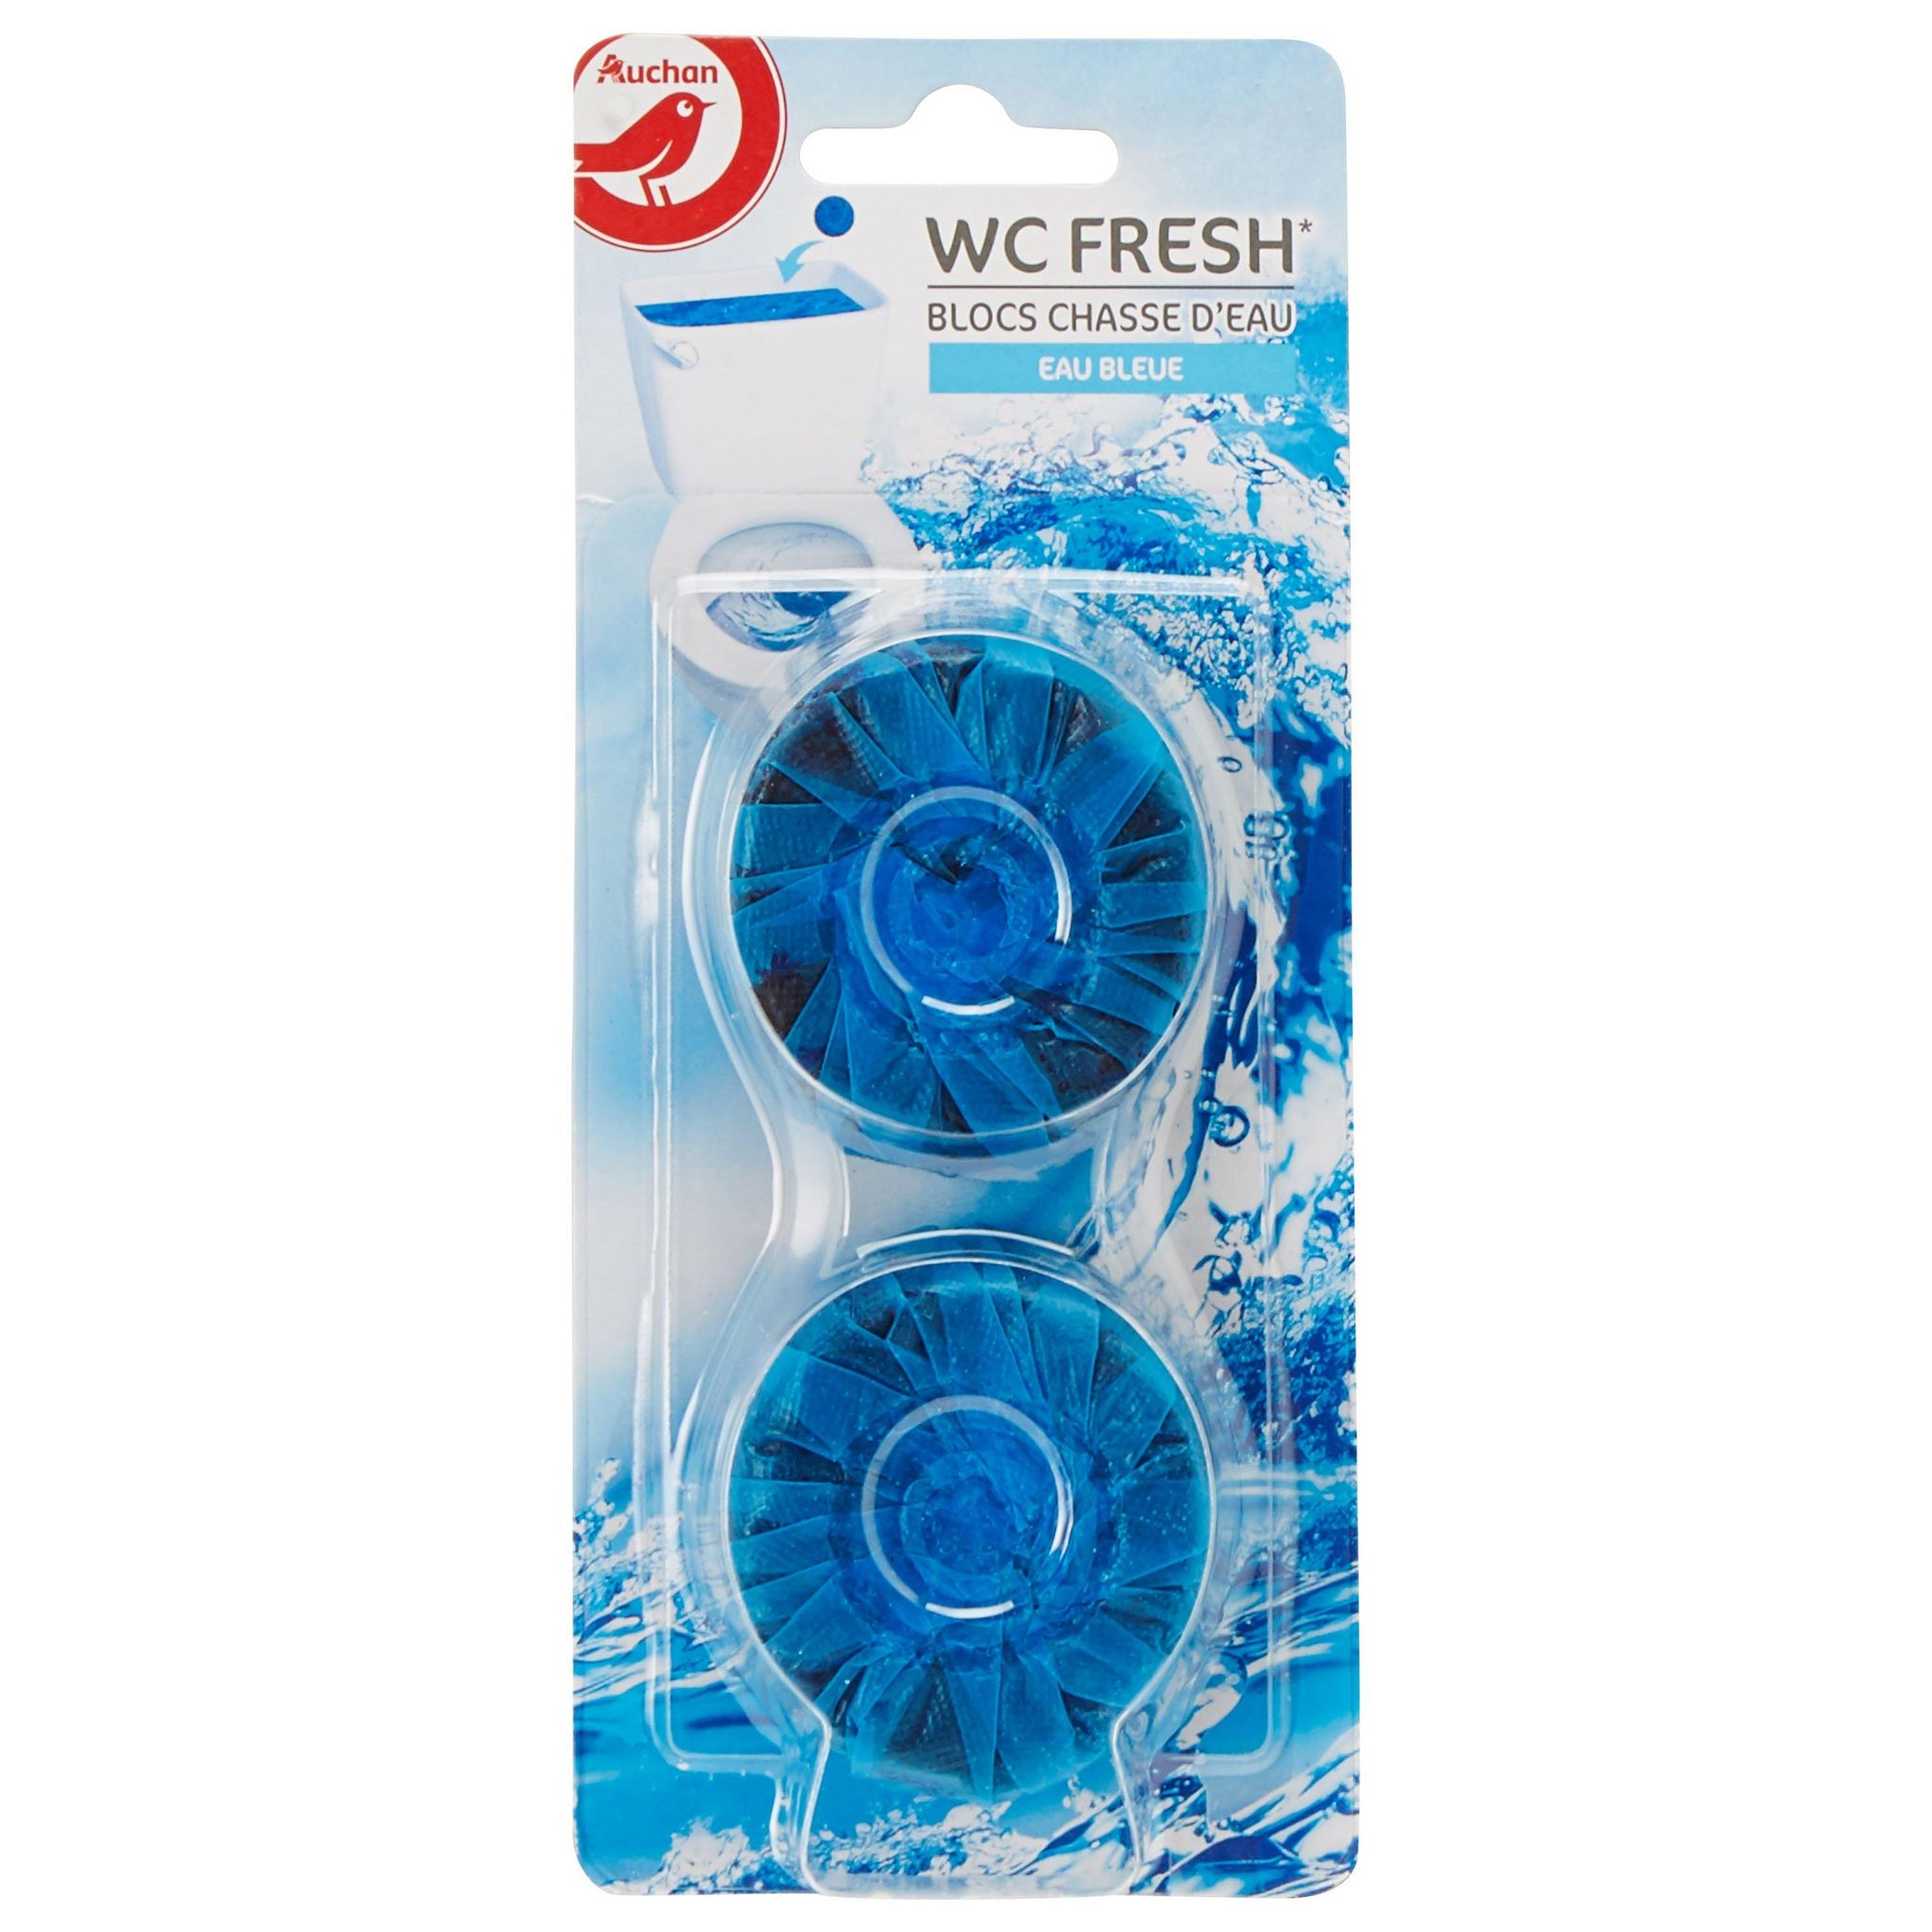 Bloc WC eau bleue pour chasse d eau - 2 blocs - LP Possession